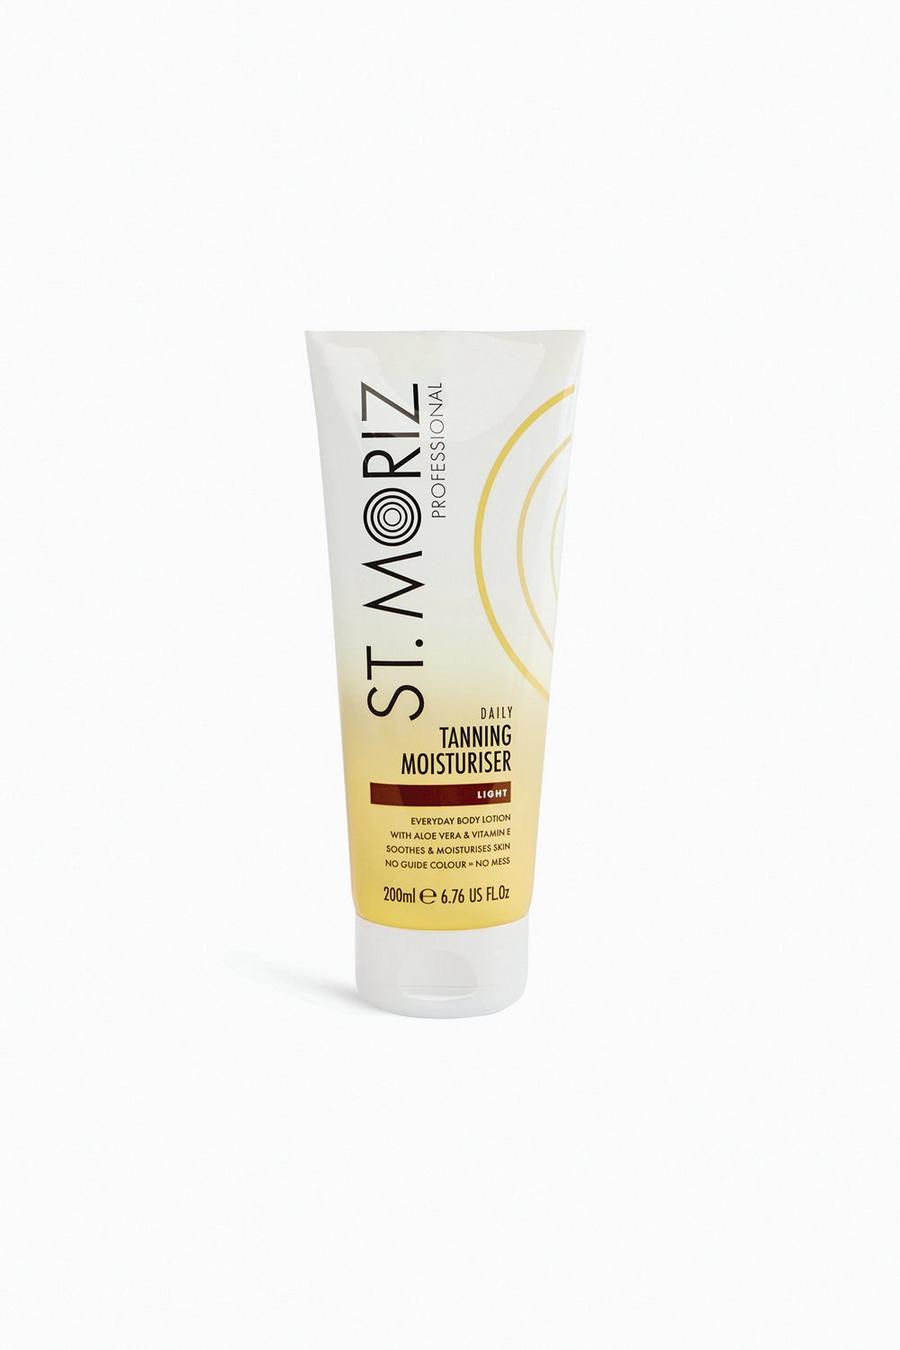 White vit St. Moriz Professional Daily Tanning Moisturiser Light 200ml